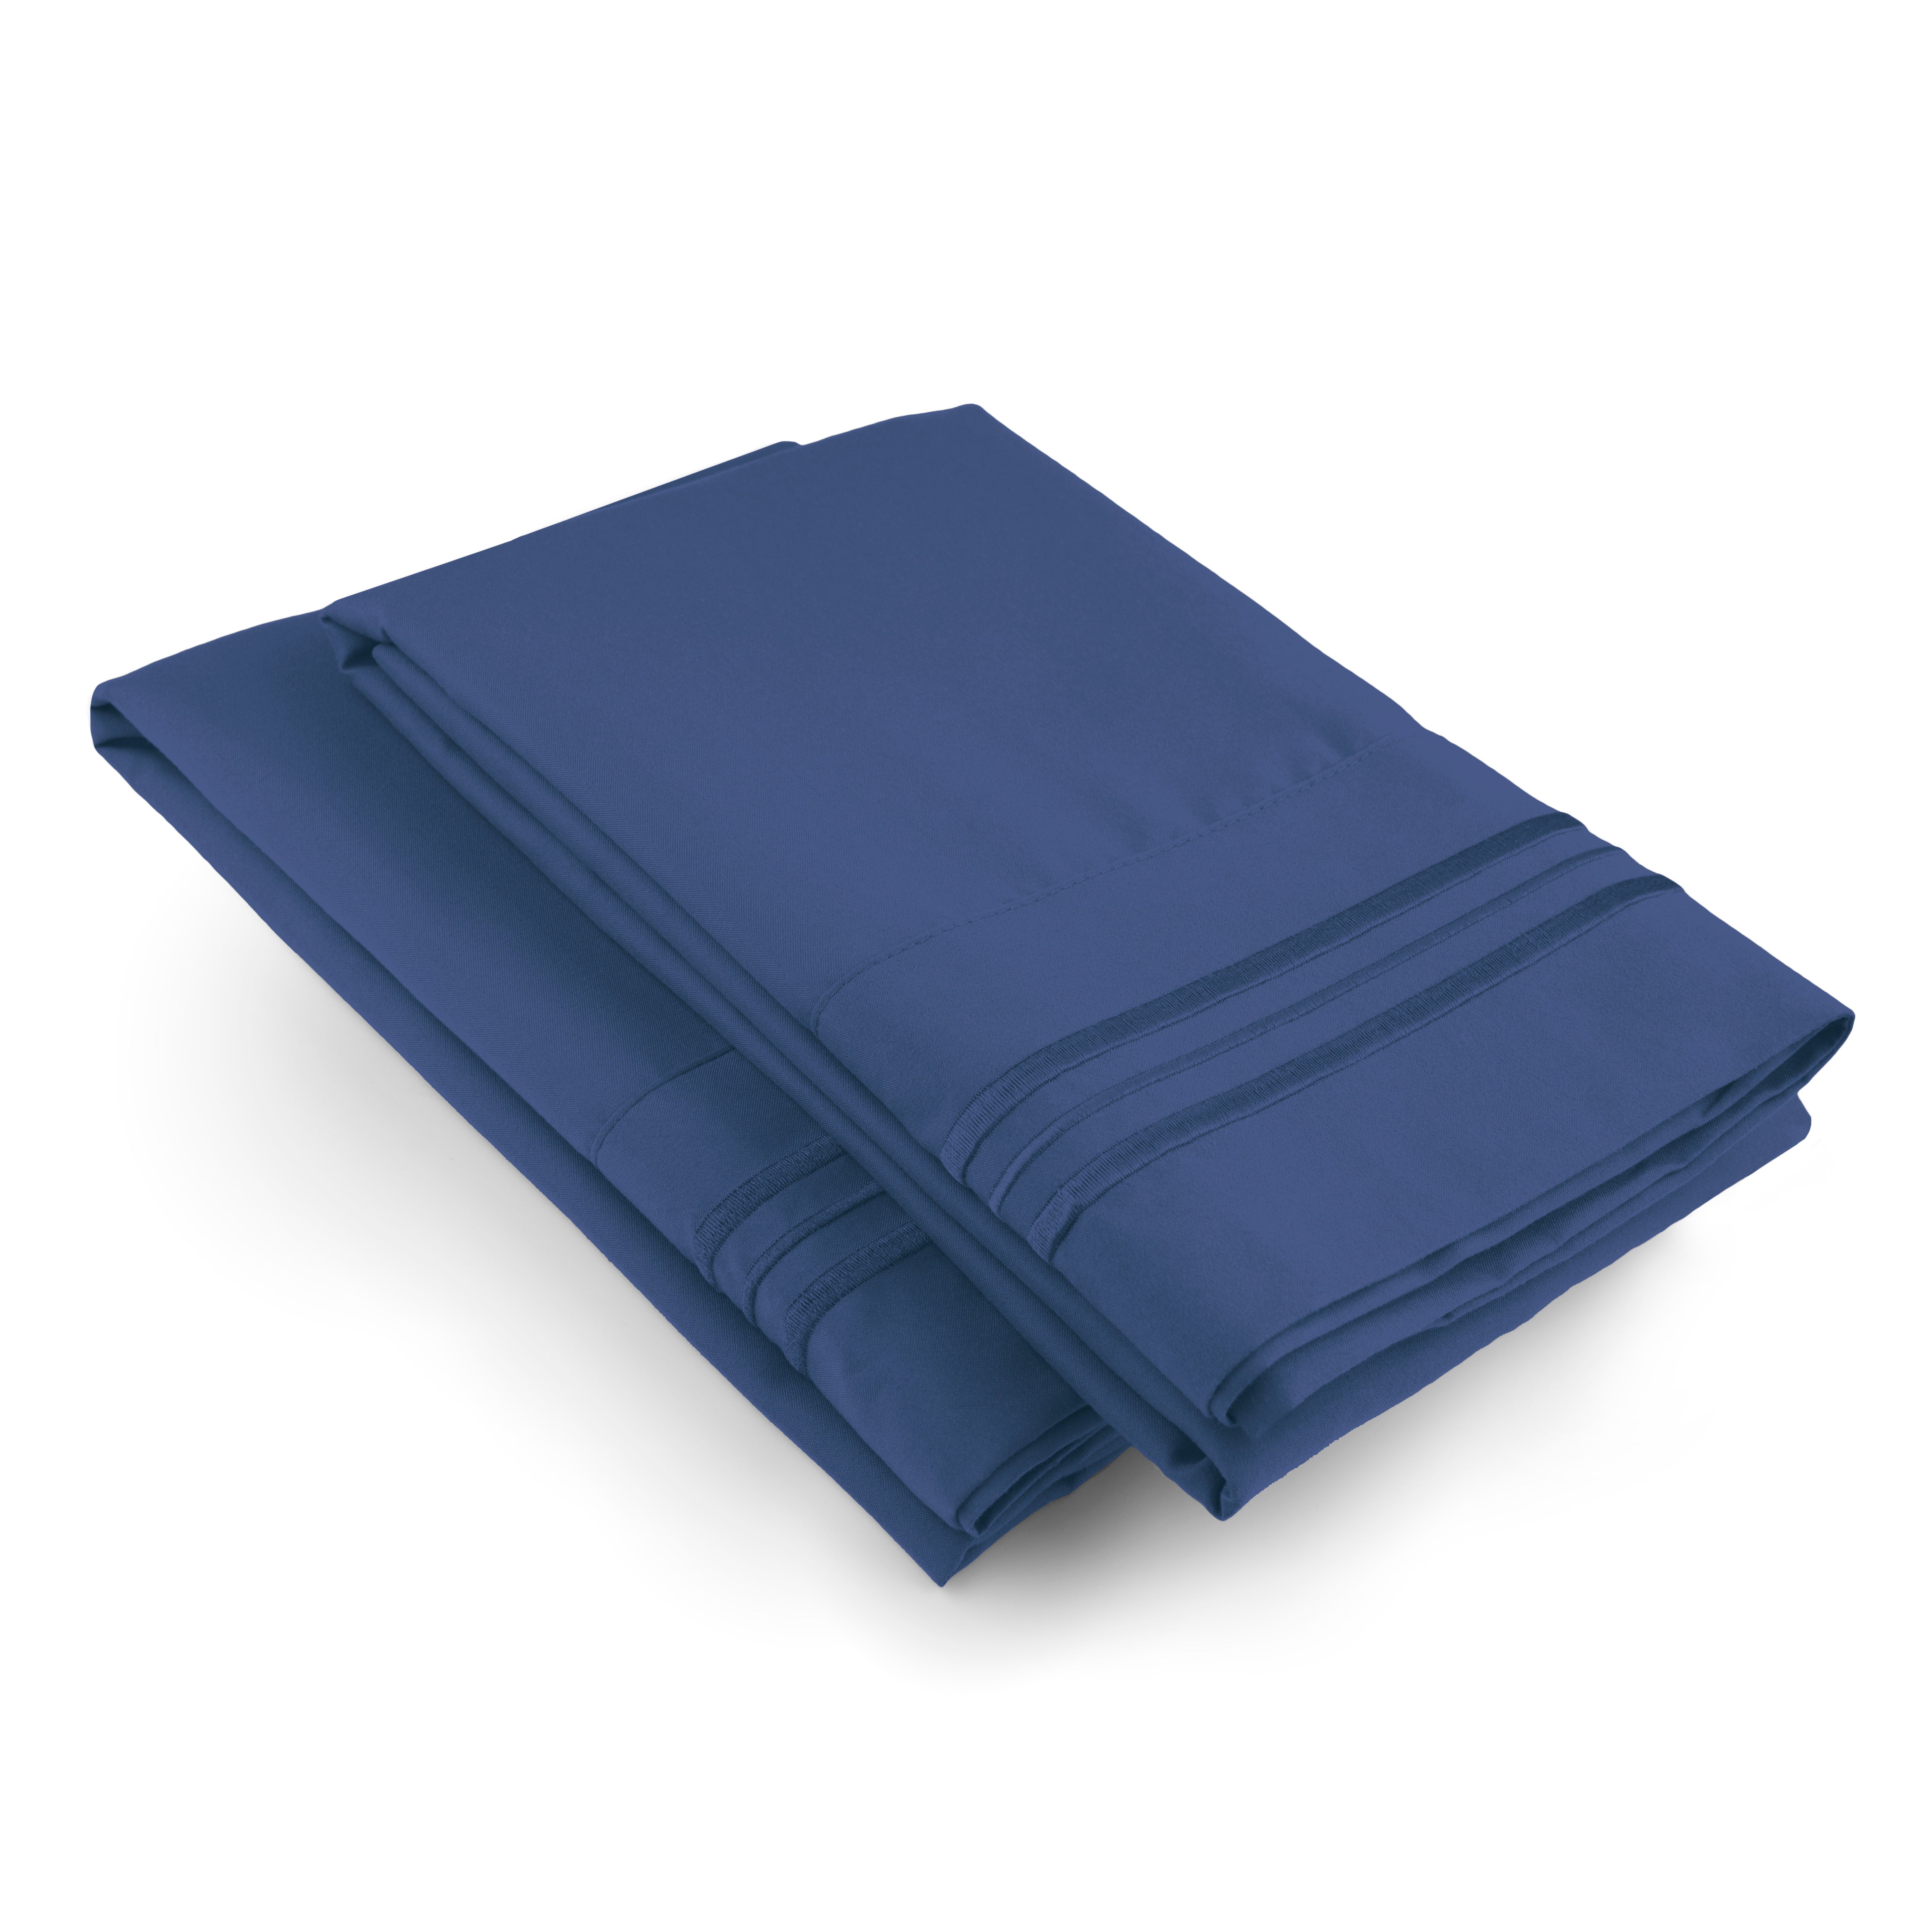 2 Pillowcase Set - Navy Blue